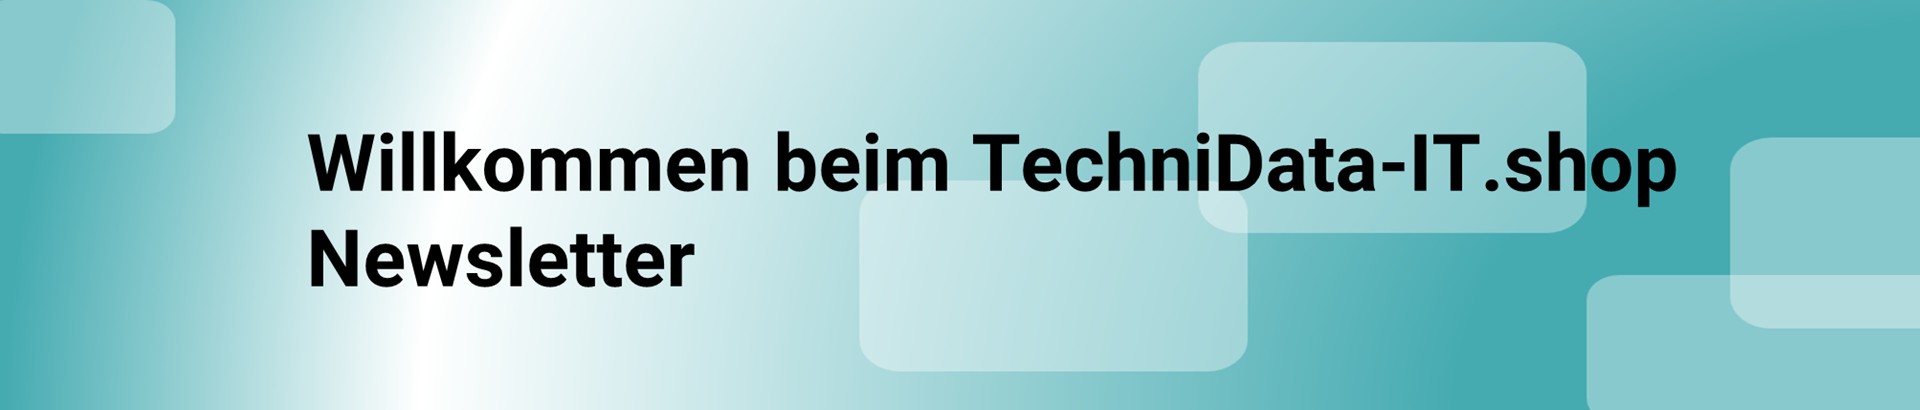 Willkommen beim TechniData-IT.shop Newsletter